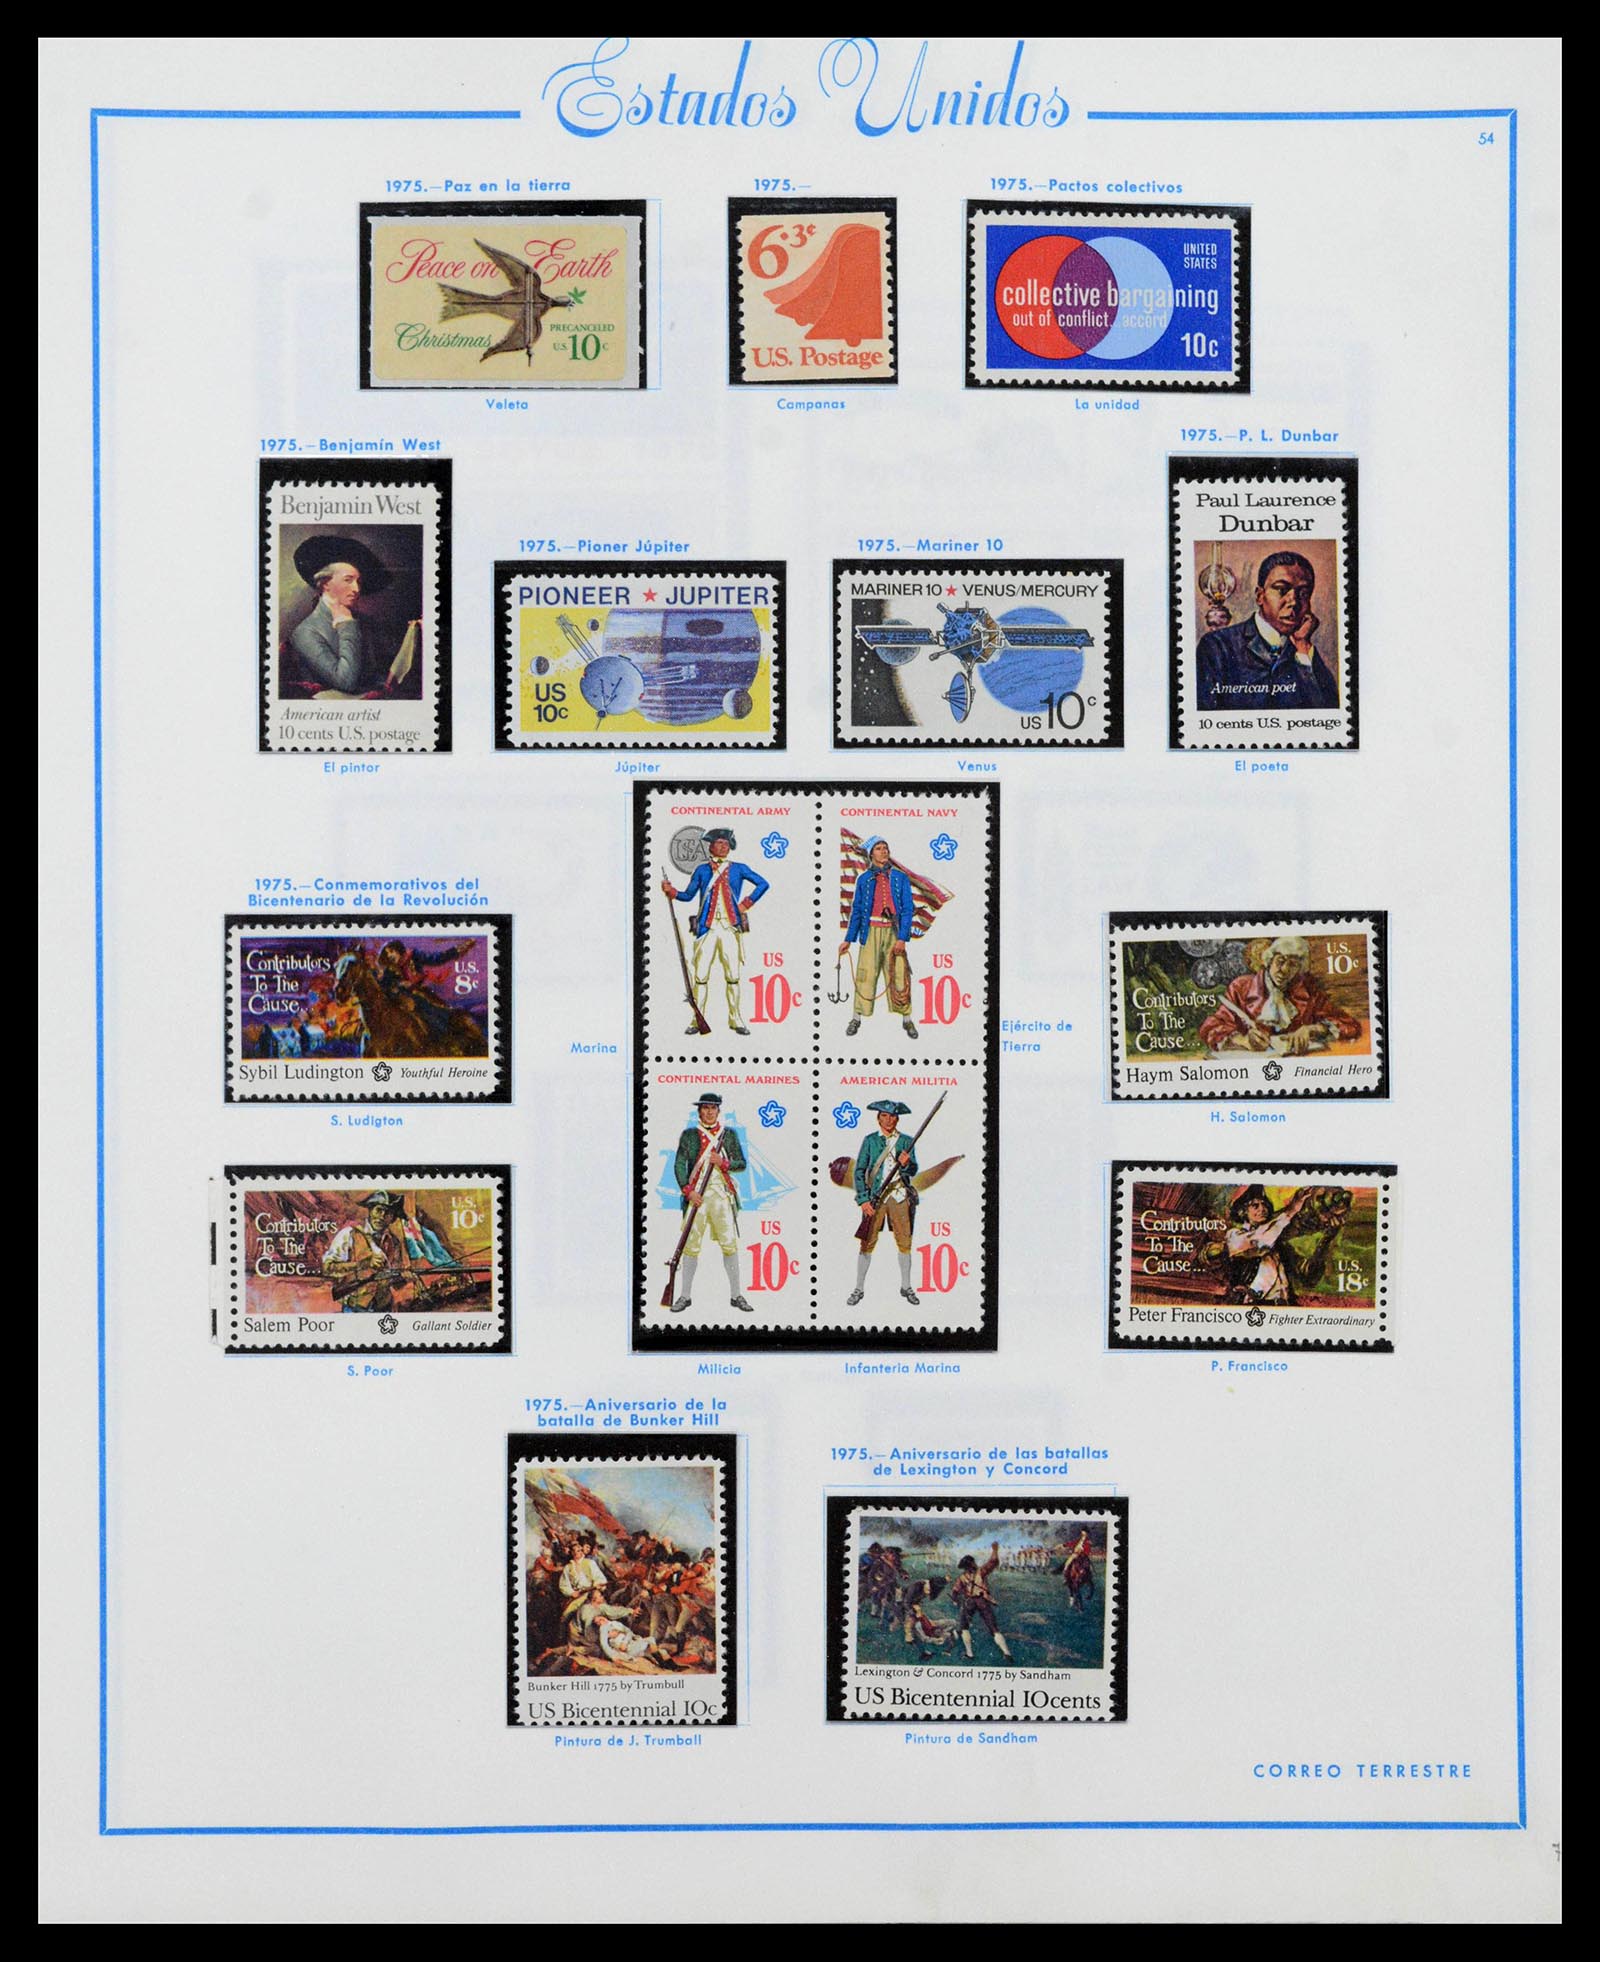 39190 0059 - Stamp collection 39190 USA 1851-1975.